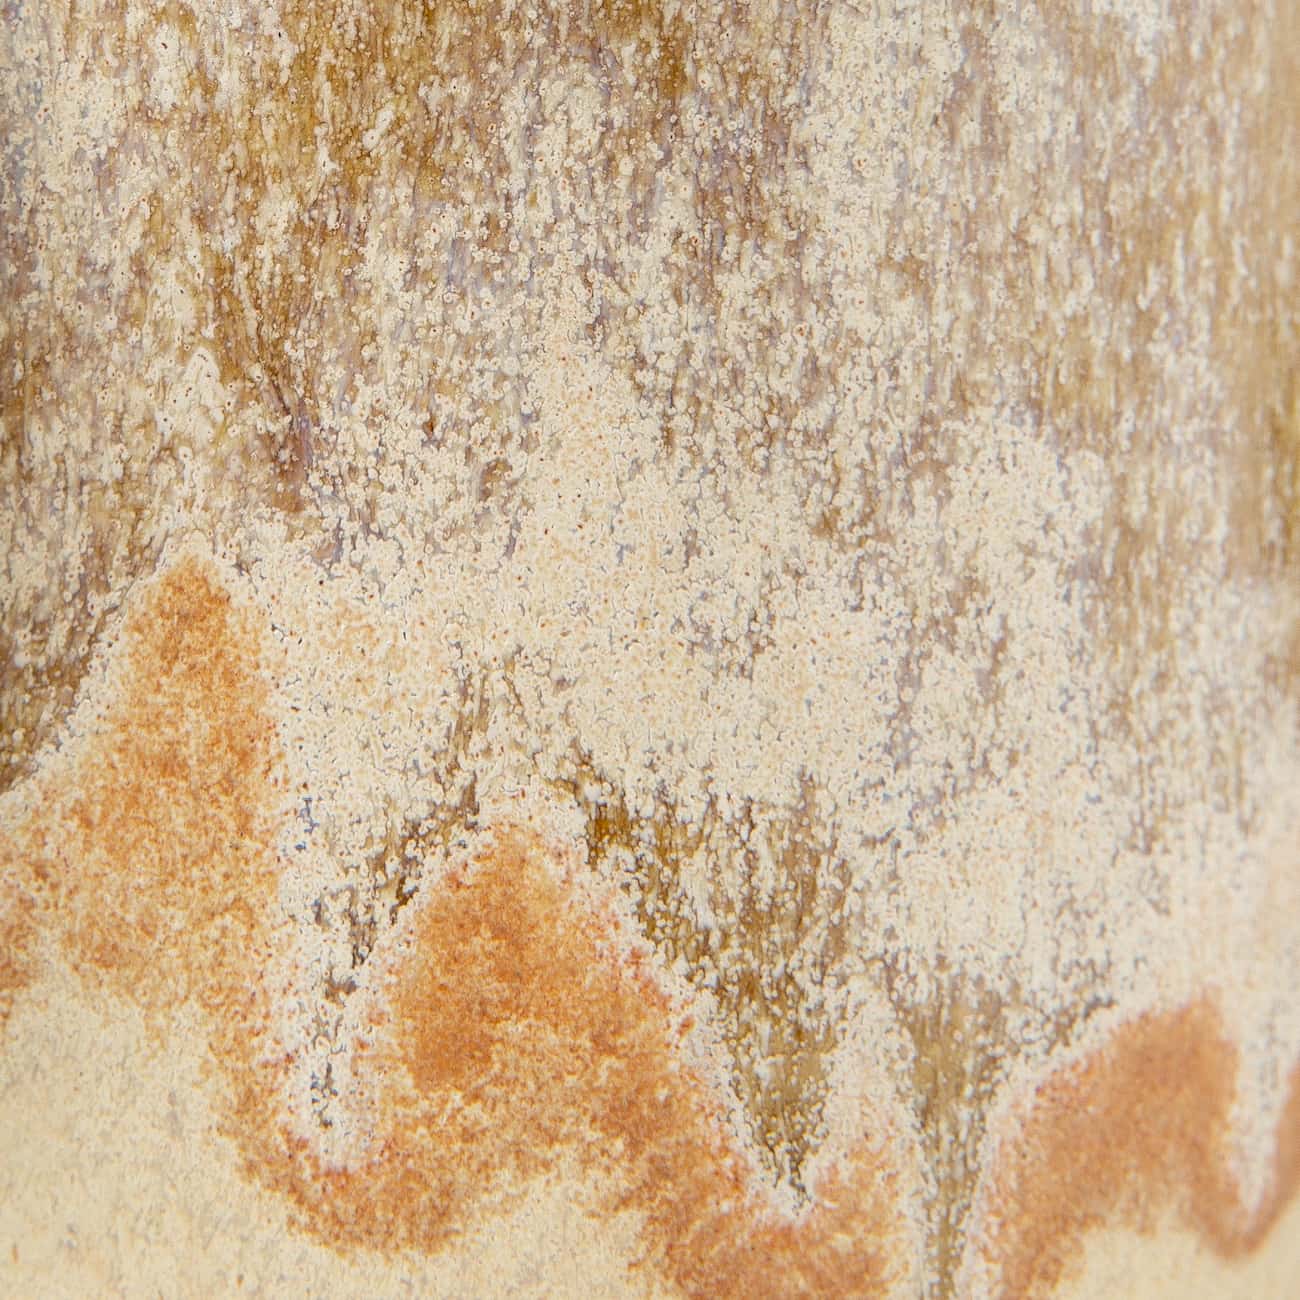 Nebula Mug close up detail reactive glaze ceramic handmade